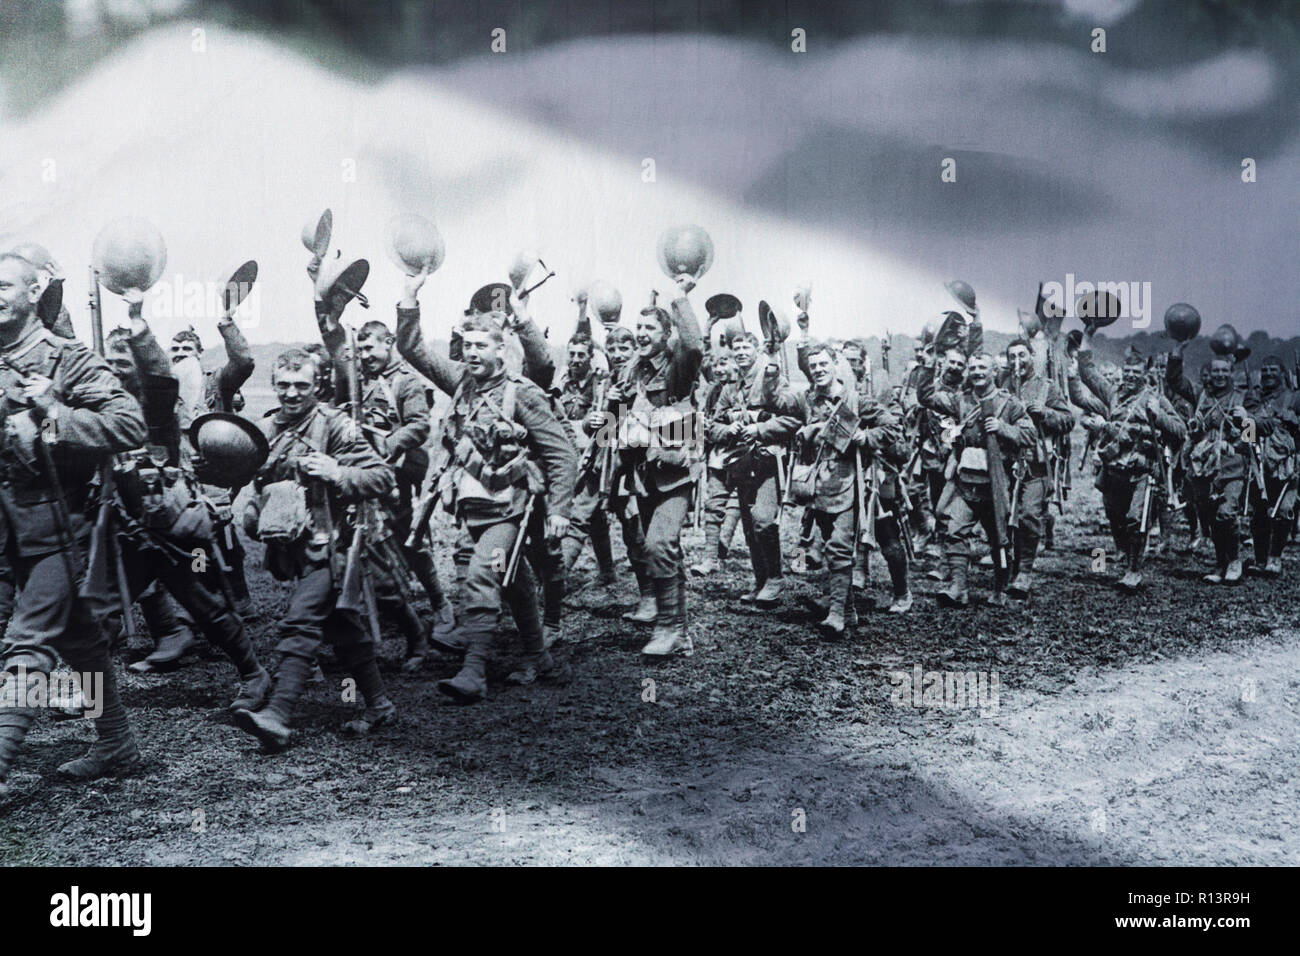 Tommies : LA PREMIÈRE GUERRE MONDIALE, Première Guerre mondiale, les troupes britanniques marcher sur le front de l'Ouest. La Grande Guerre des soldats britanniques marcher. 1914 1918 Banque D'Images